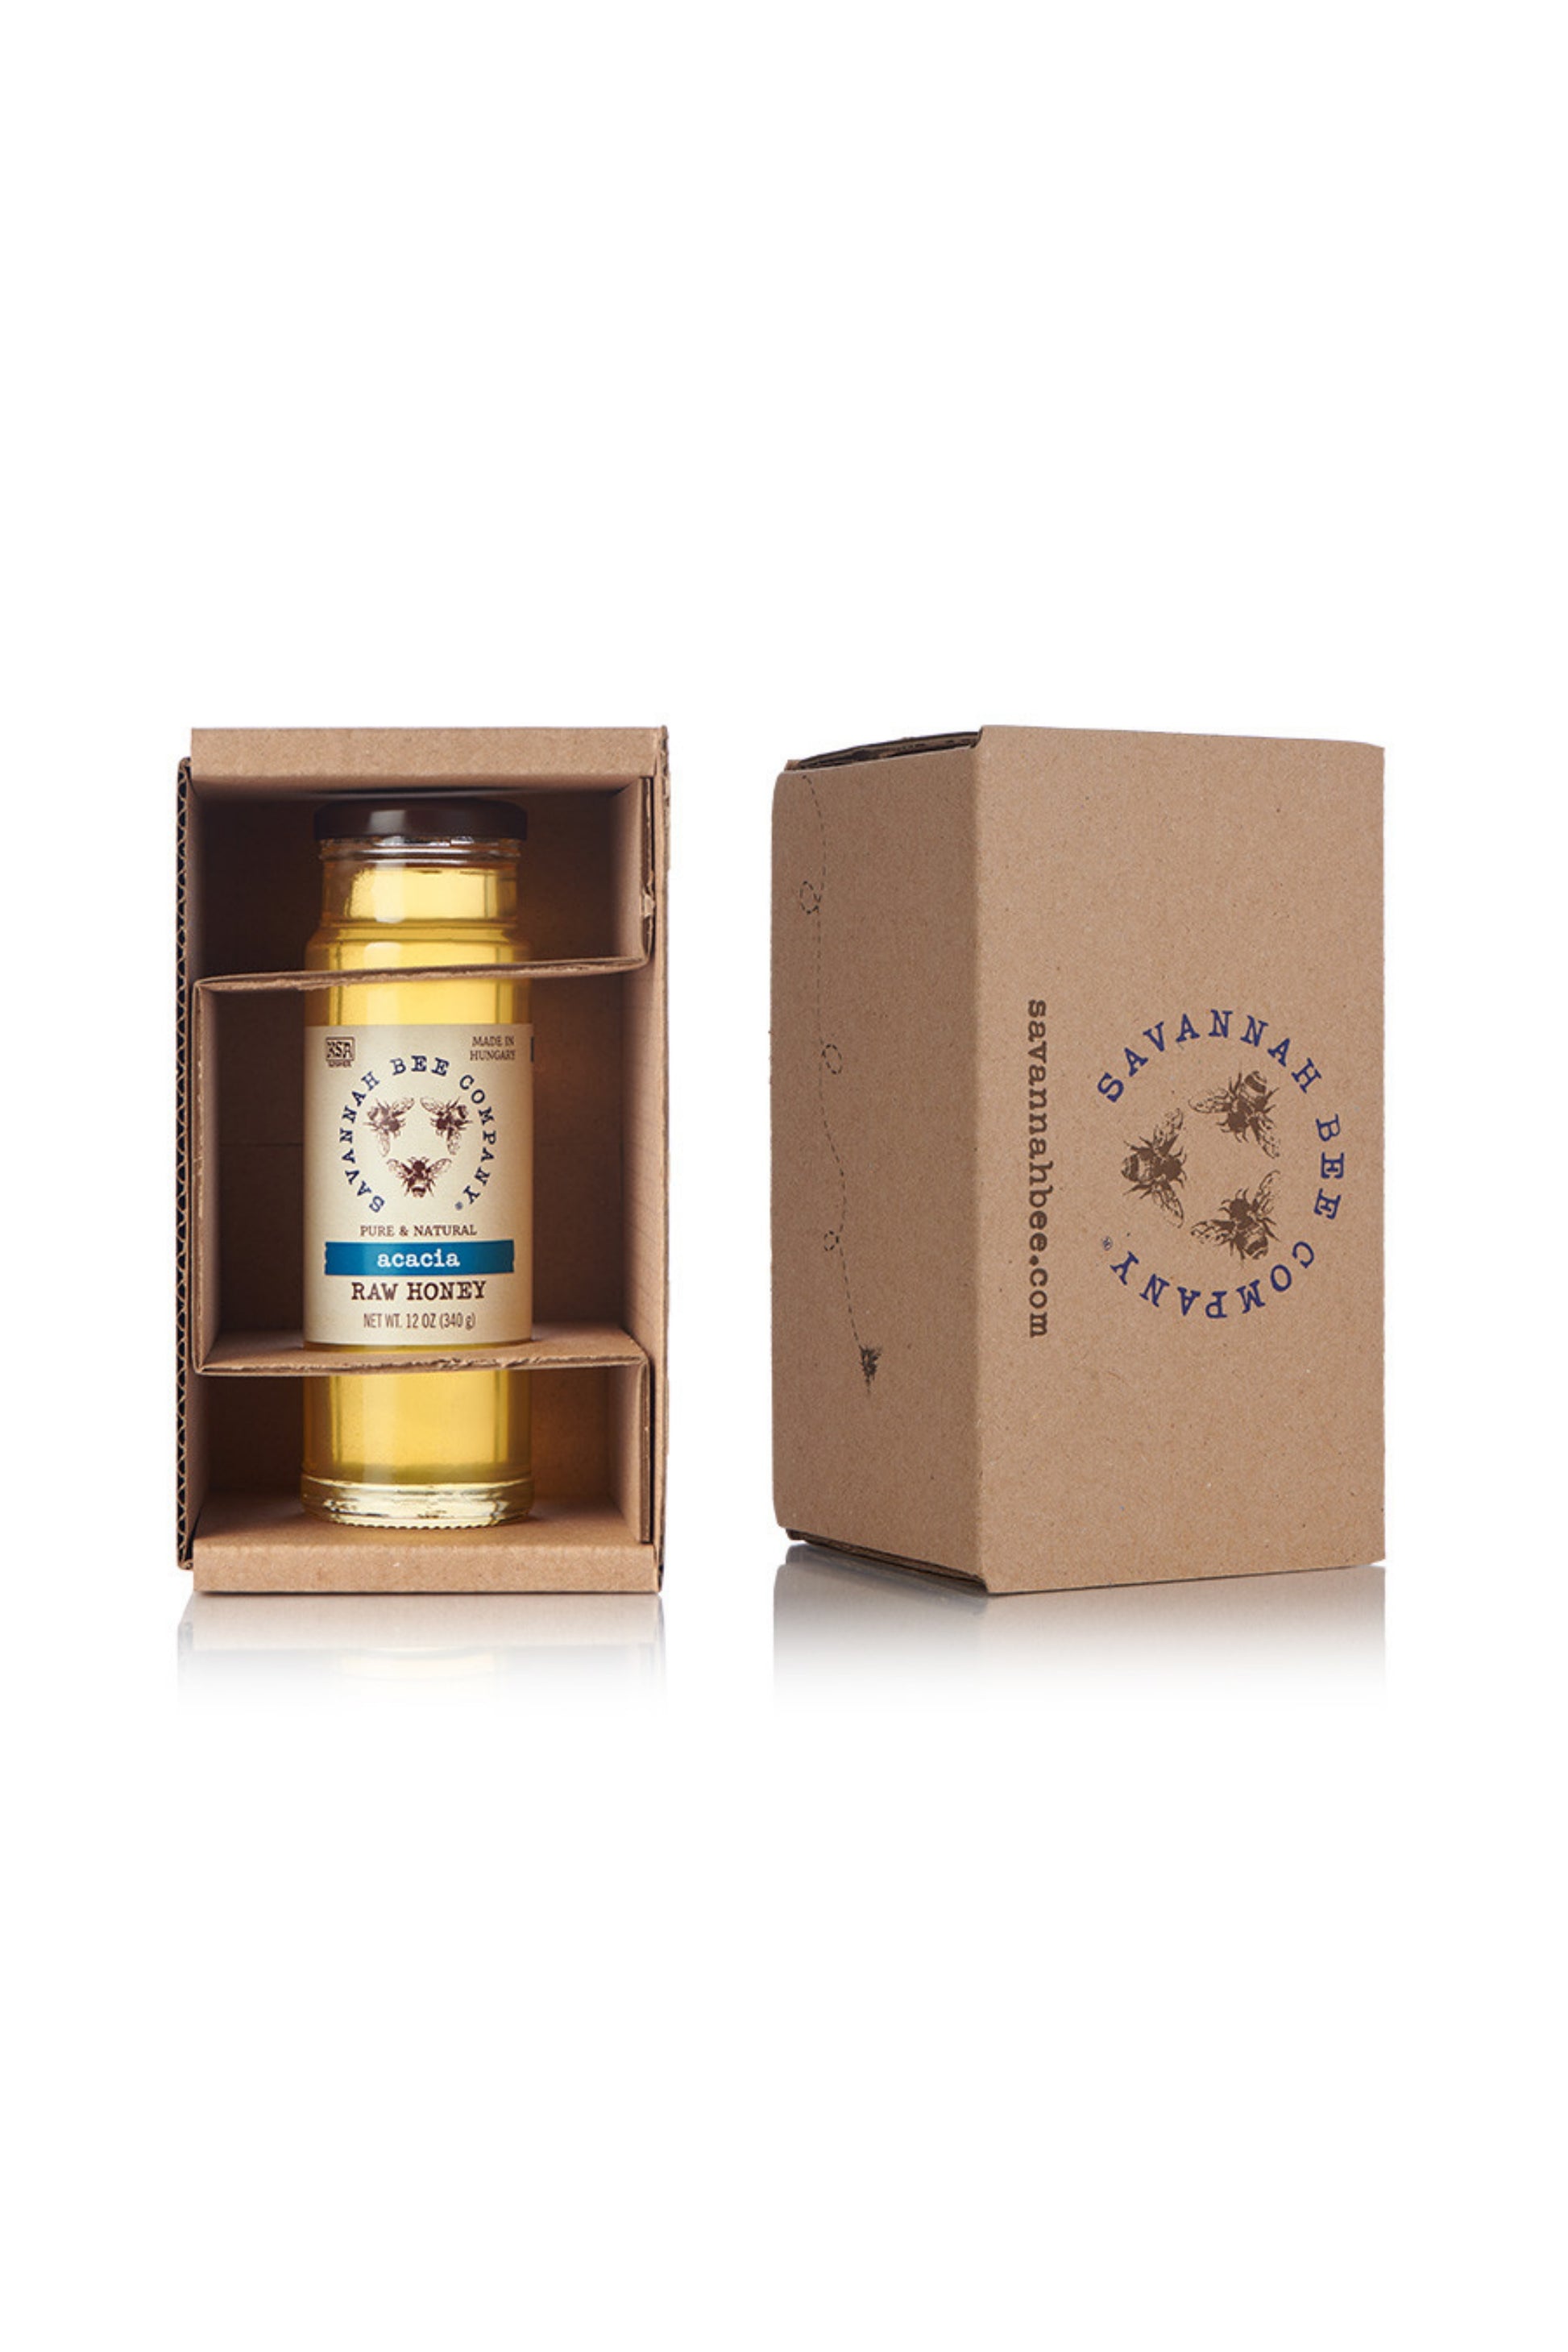 Pure & Natural Acacia Raw Honey 12 oz. tower in a gift box  with Savannah Bee Logo.